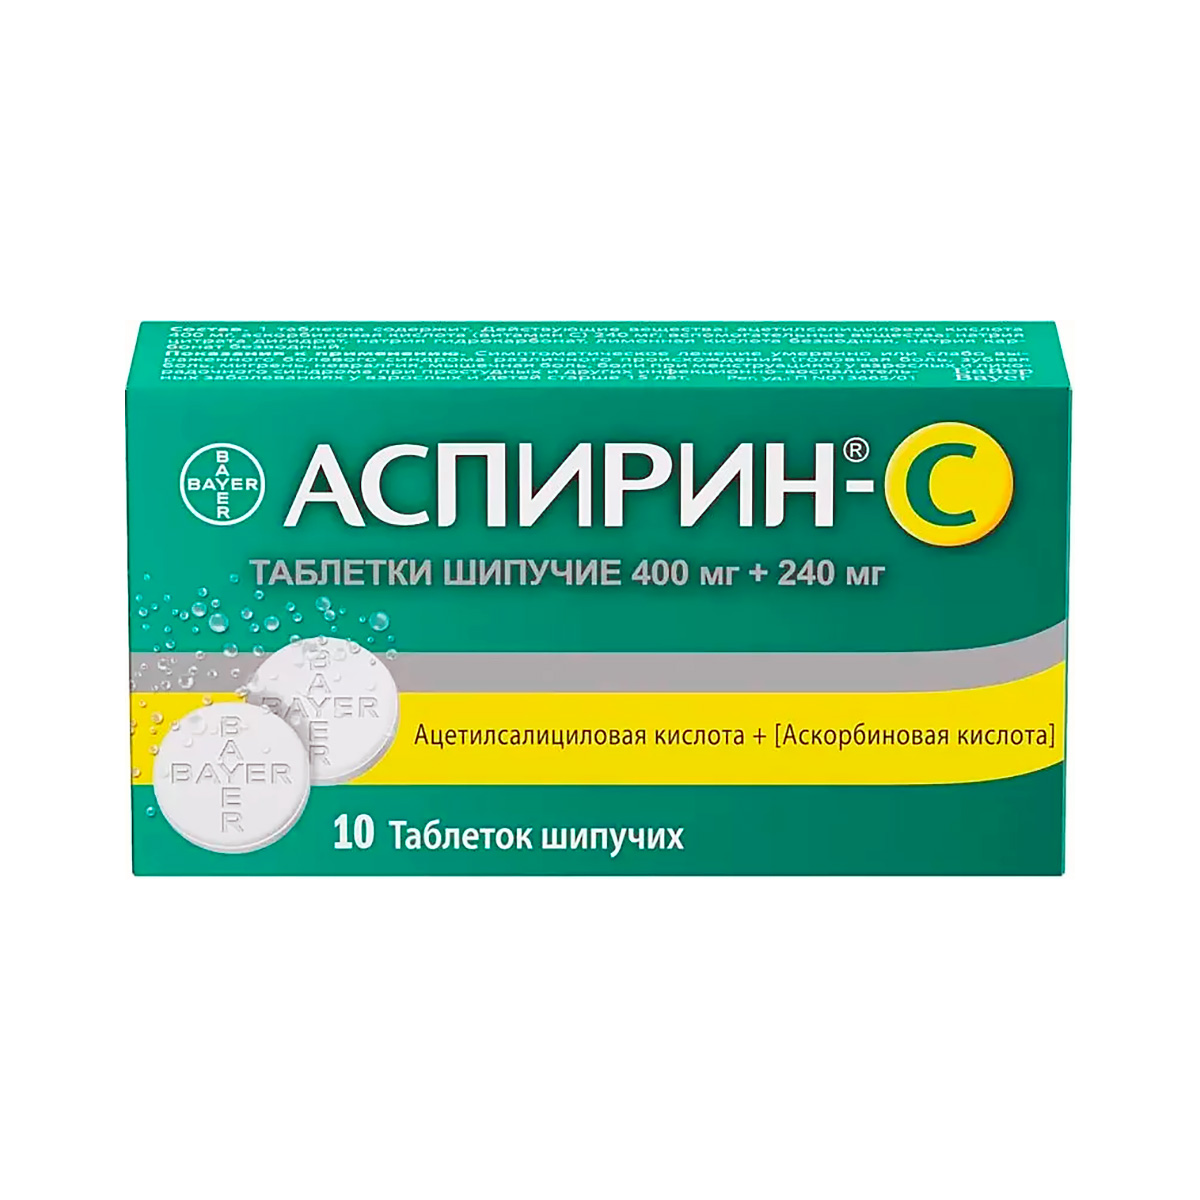 Аспирин С 400 мг+240 мг таблетки шипучие 10 шт